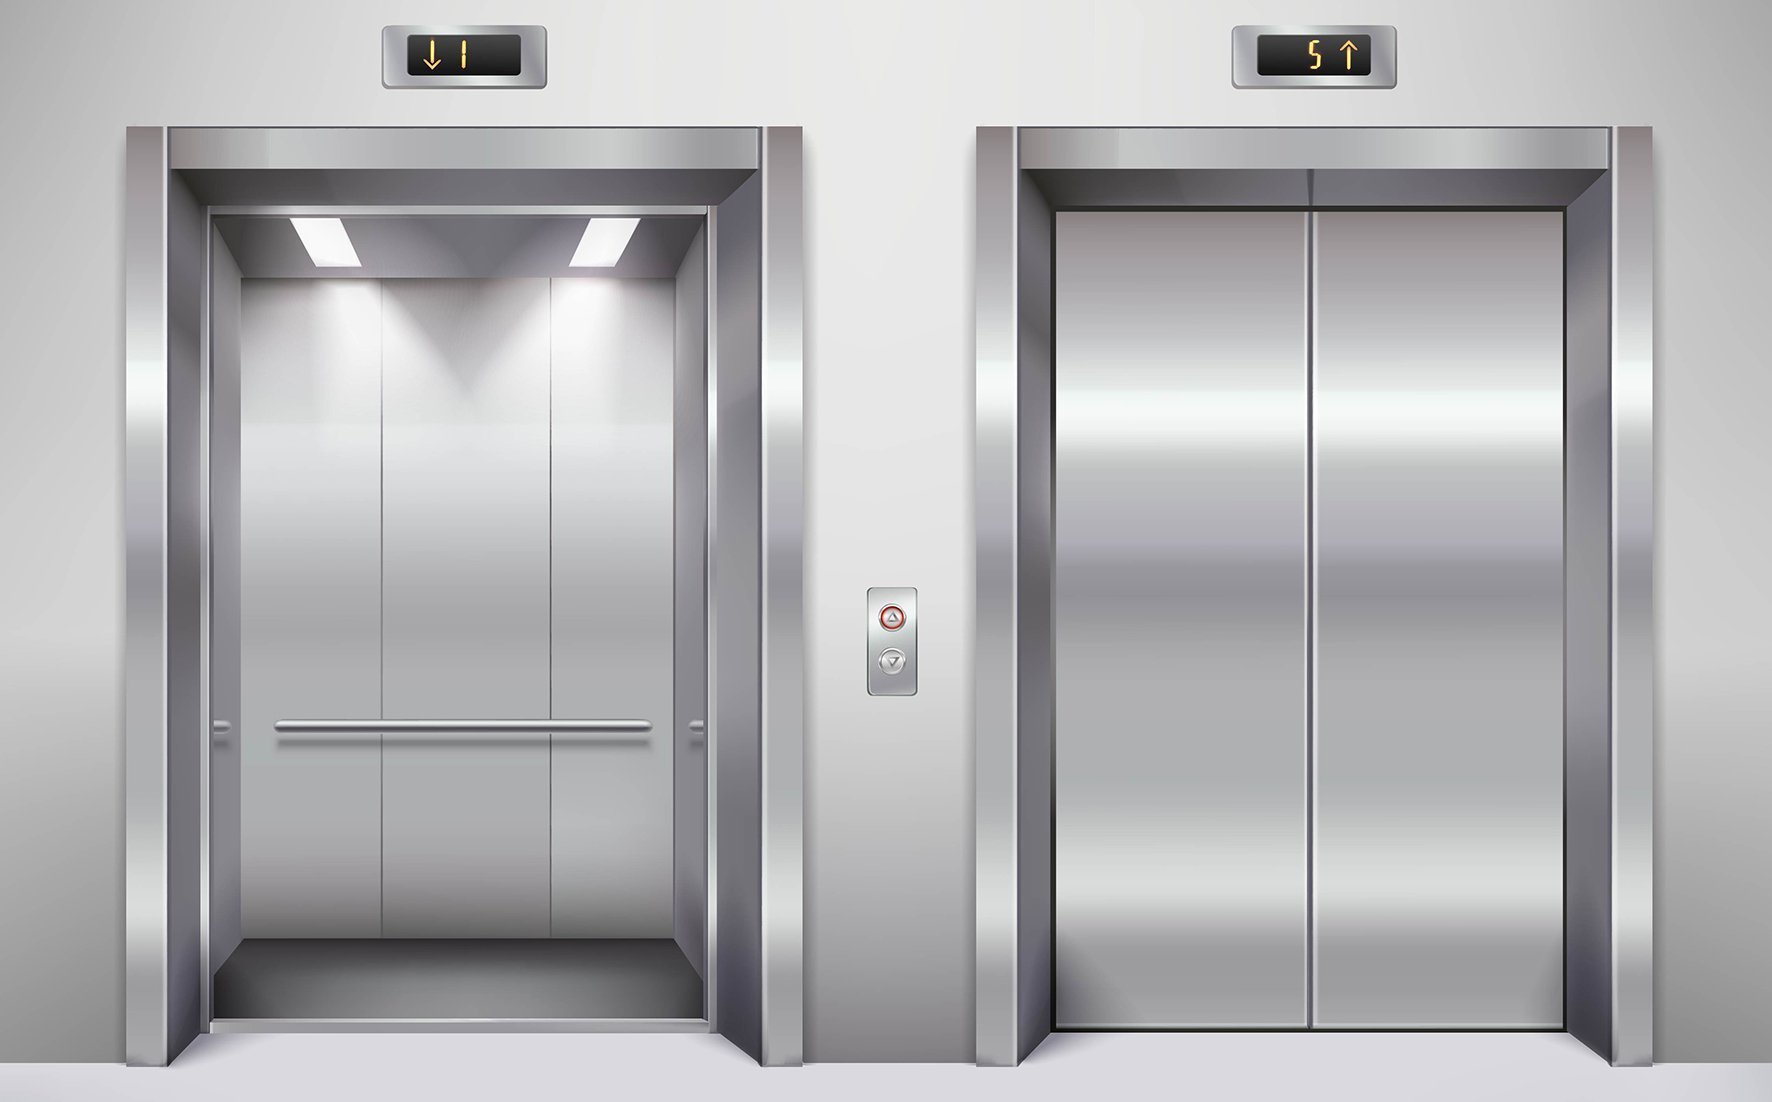 Три вертикальный лифта. Лифтовые двери Отис нержавейки. Лифт кабина 2000х1400. Лифт ЩЛЗ 2001. Лифт на 100 двери Дорс.